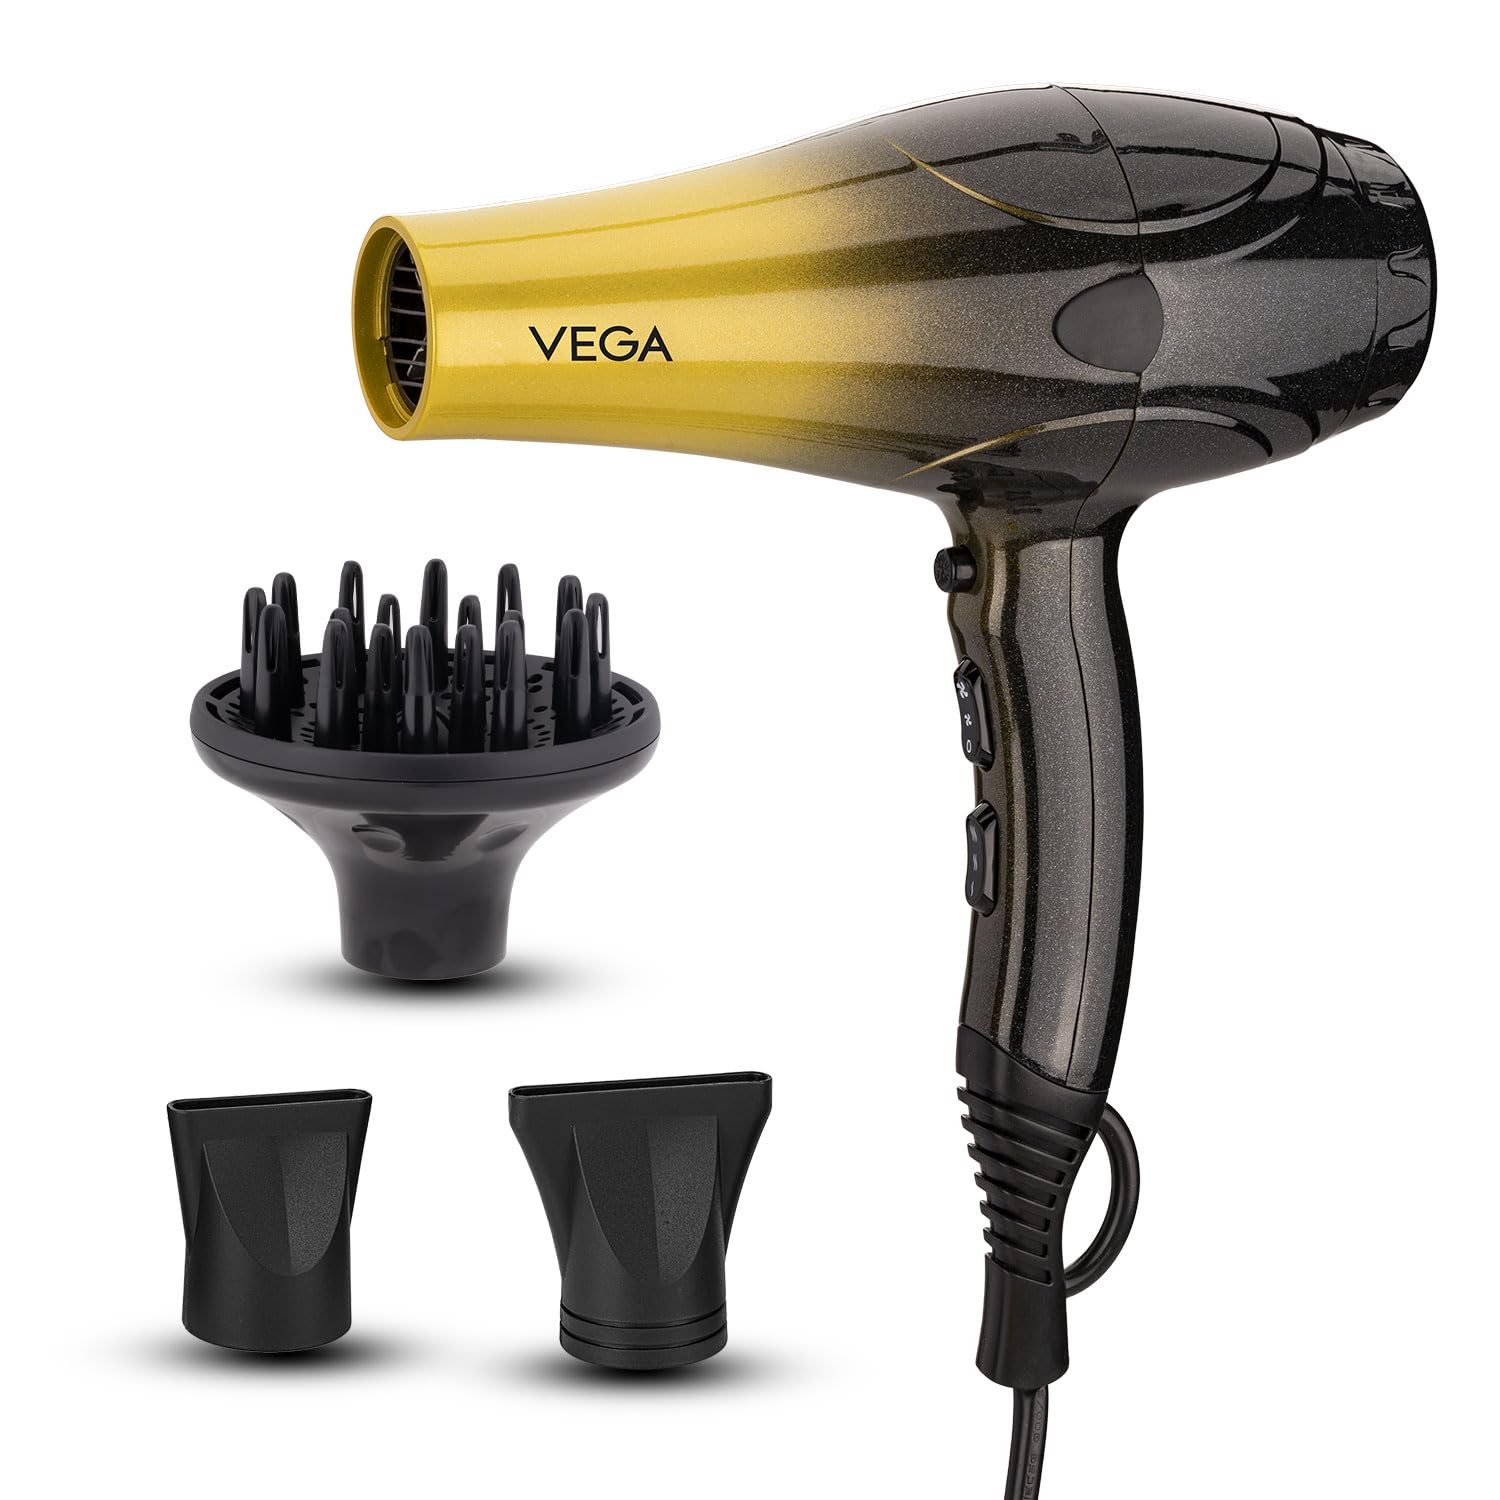 VEGA Super Pro 2400W hair dryer